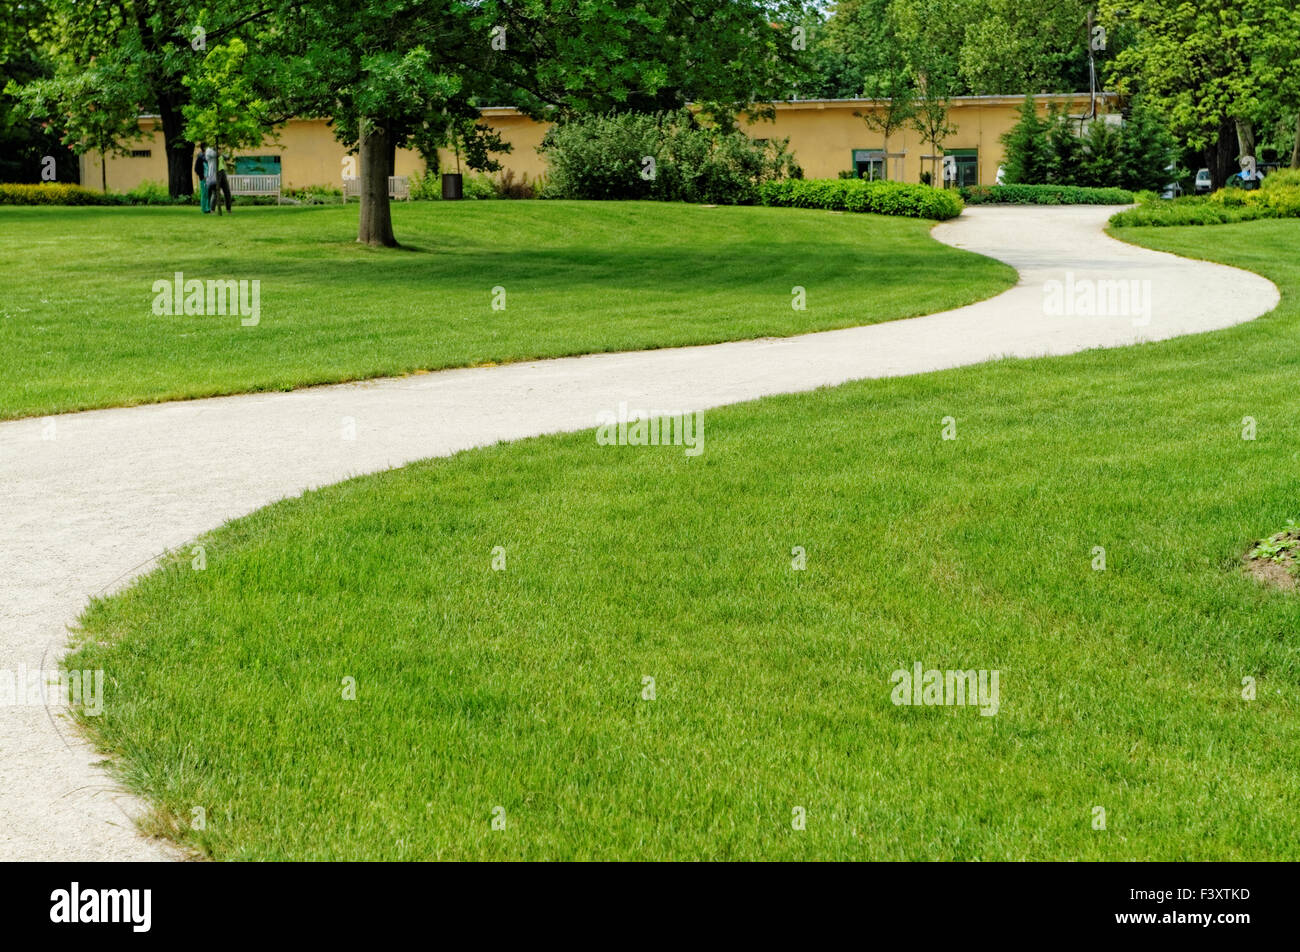 Winding path through a peaceful green garden Stock Photo